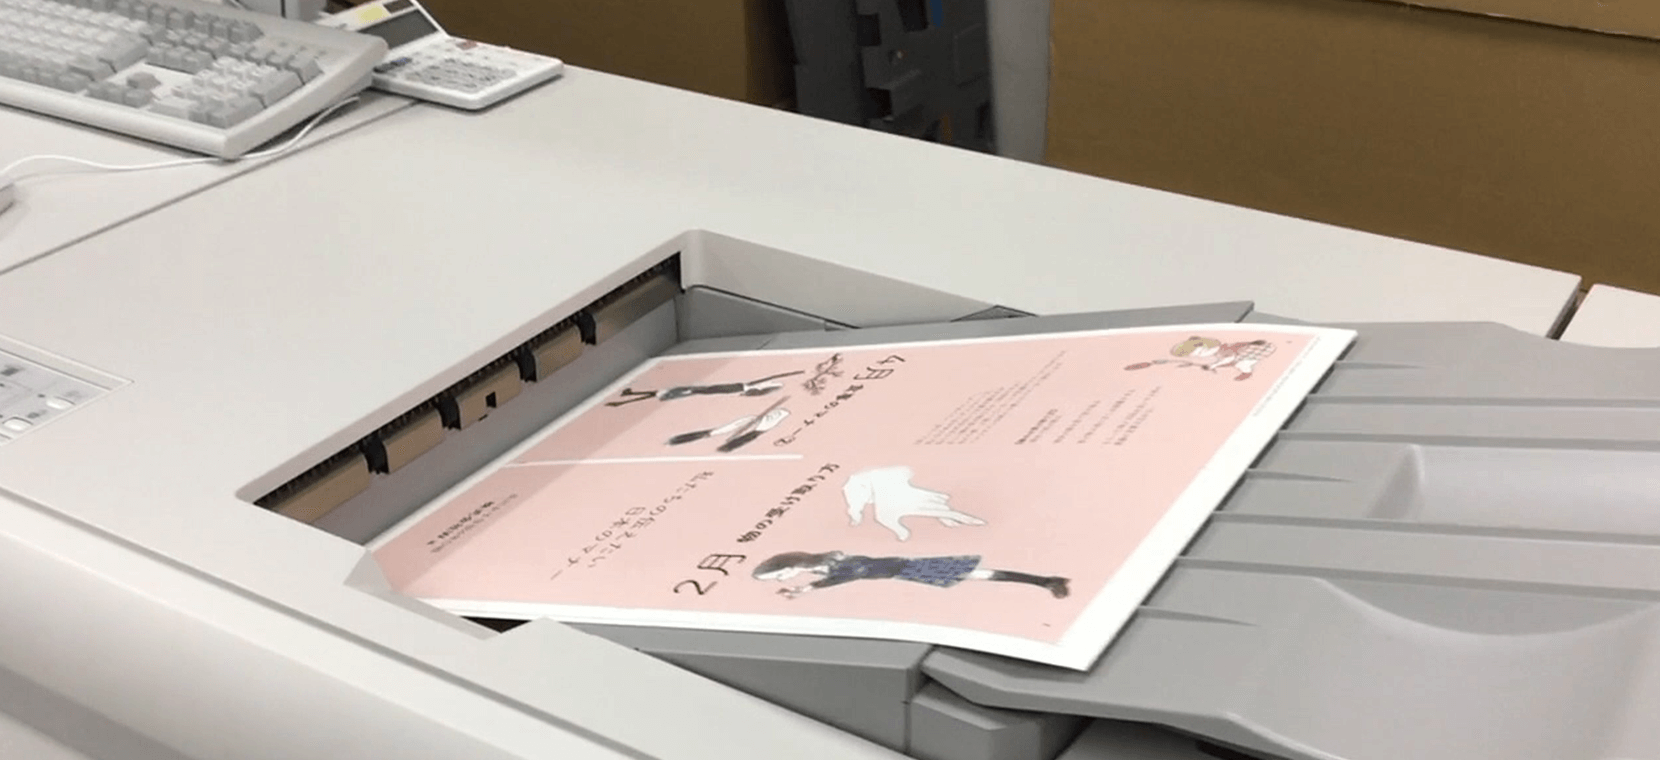 オンデマンド印刷機でオリジナル絵本の本文を印刷している様子